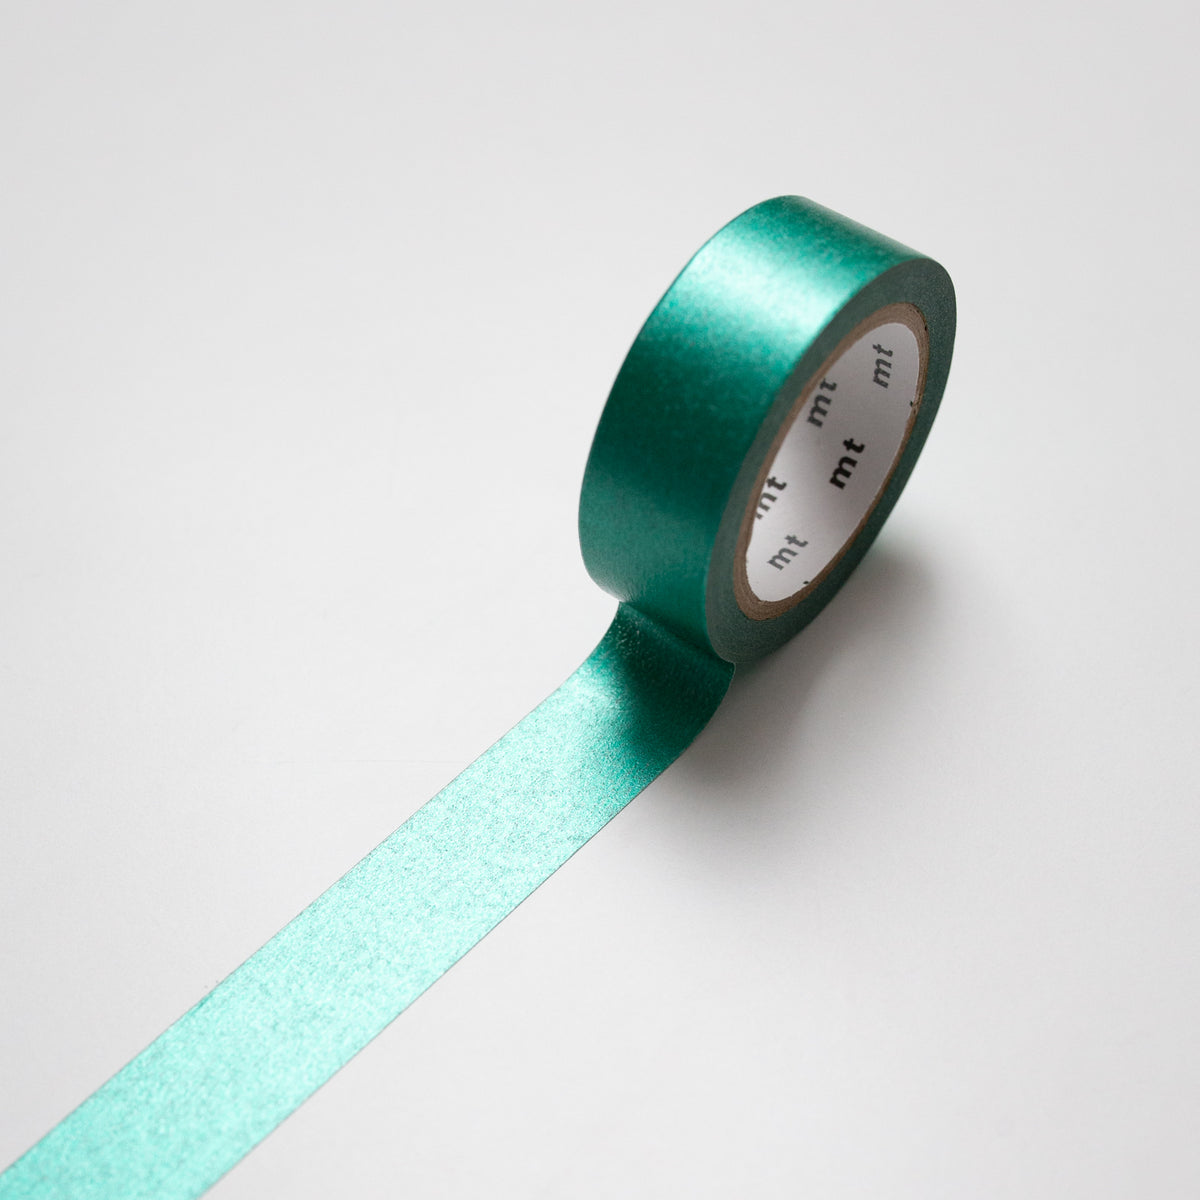 MT Masking tape Metallic Green